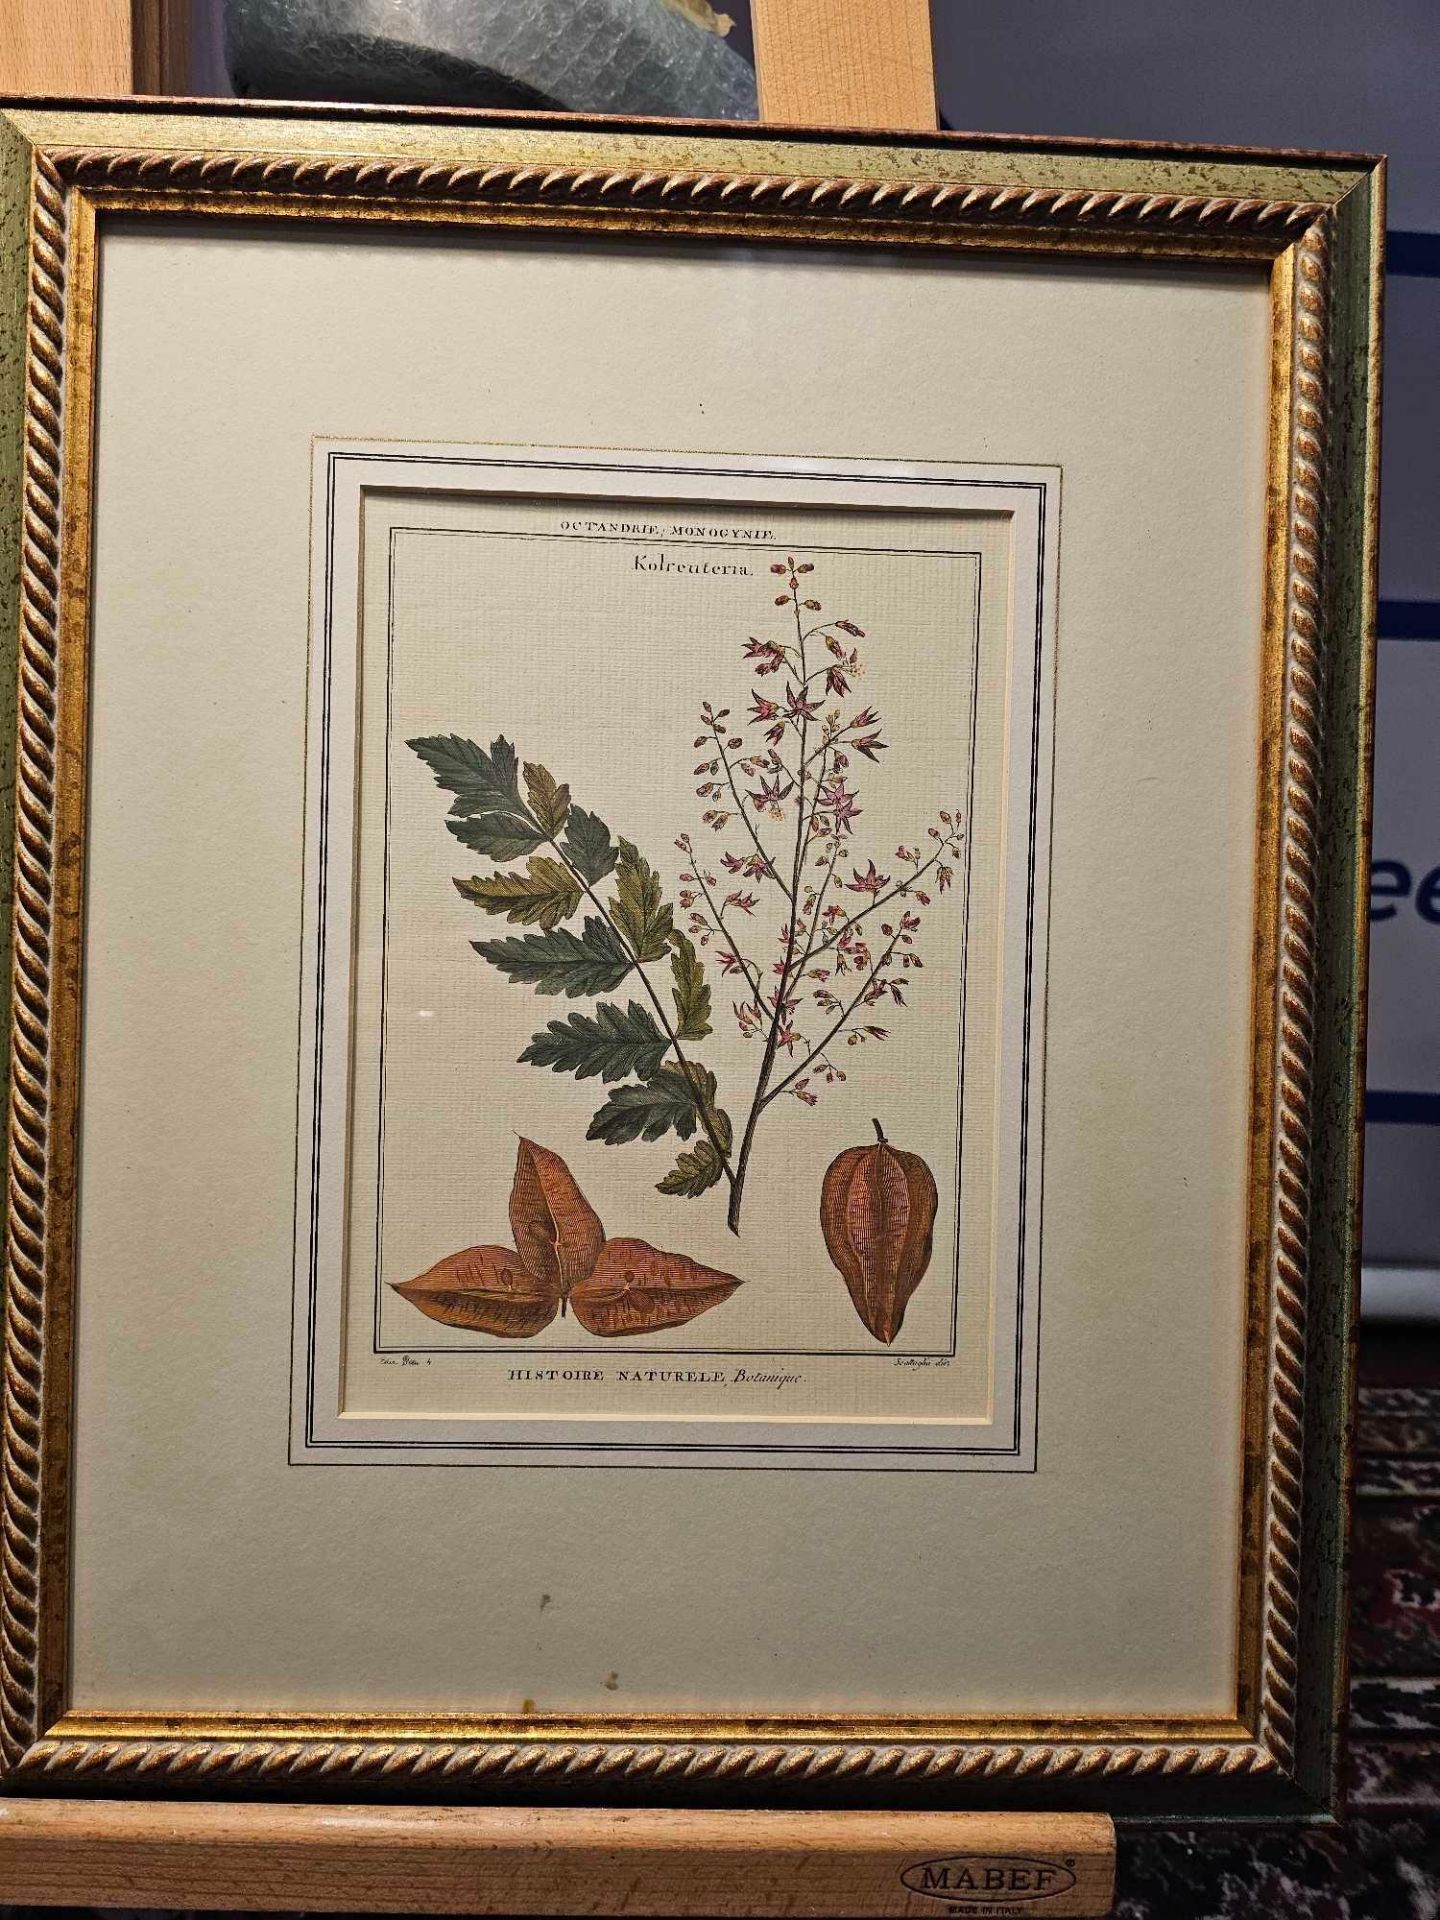 2 x Framed Botanical Prints (1) Decandria Monogyne Sophora. History, Nature, Botany; Scallaglia ( - Image 3 of 4